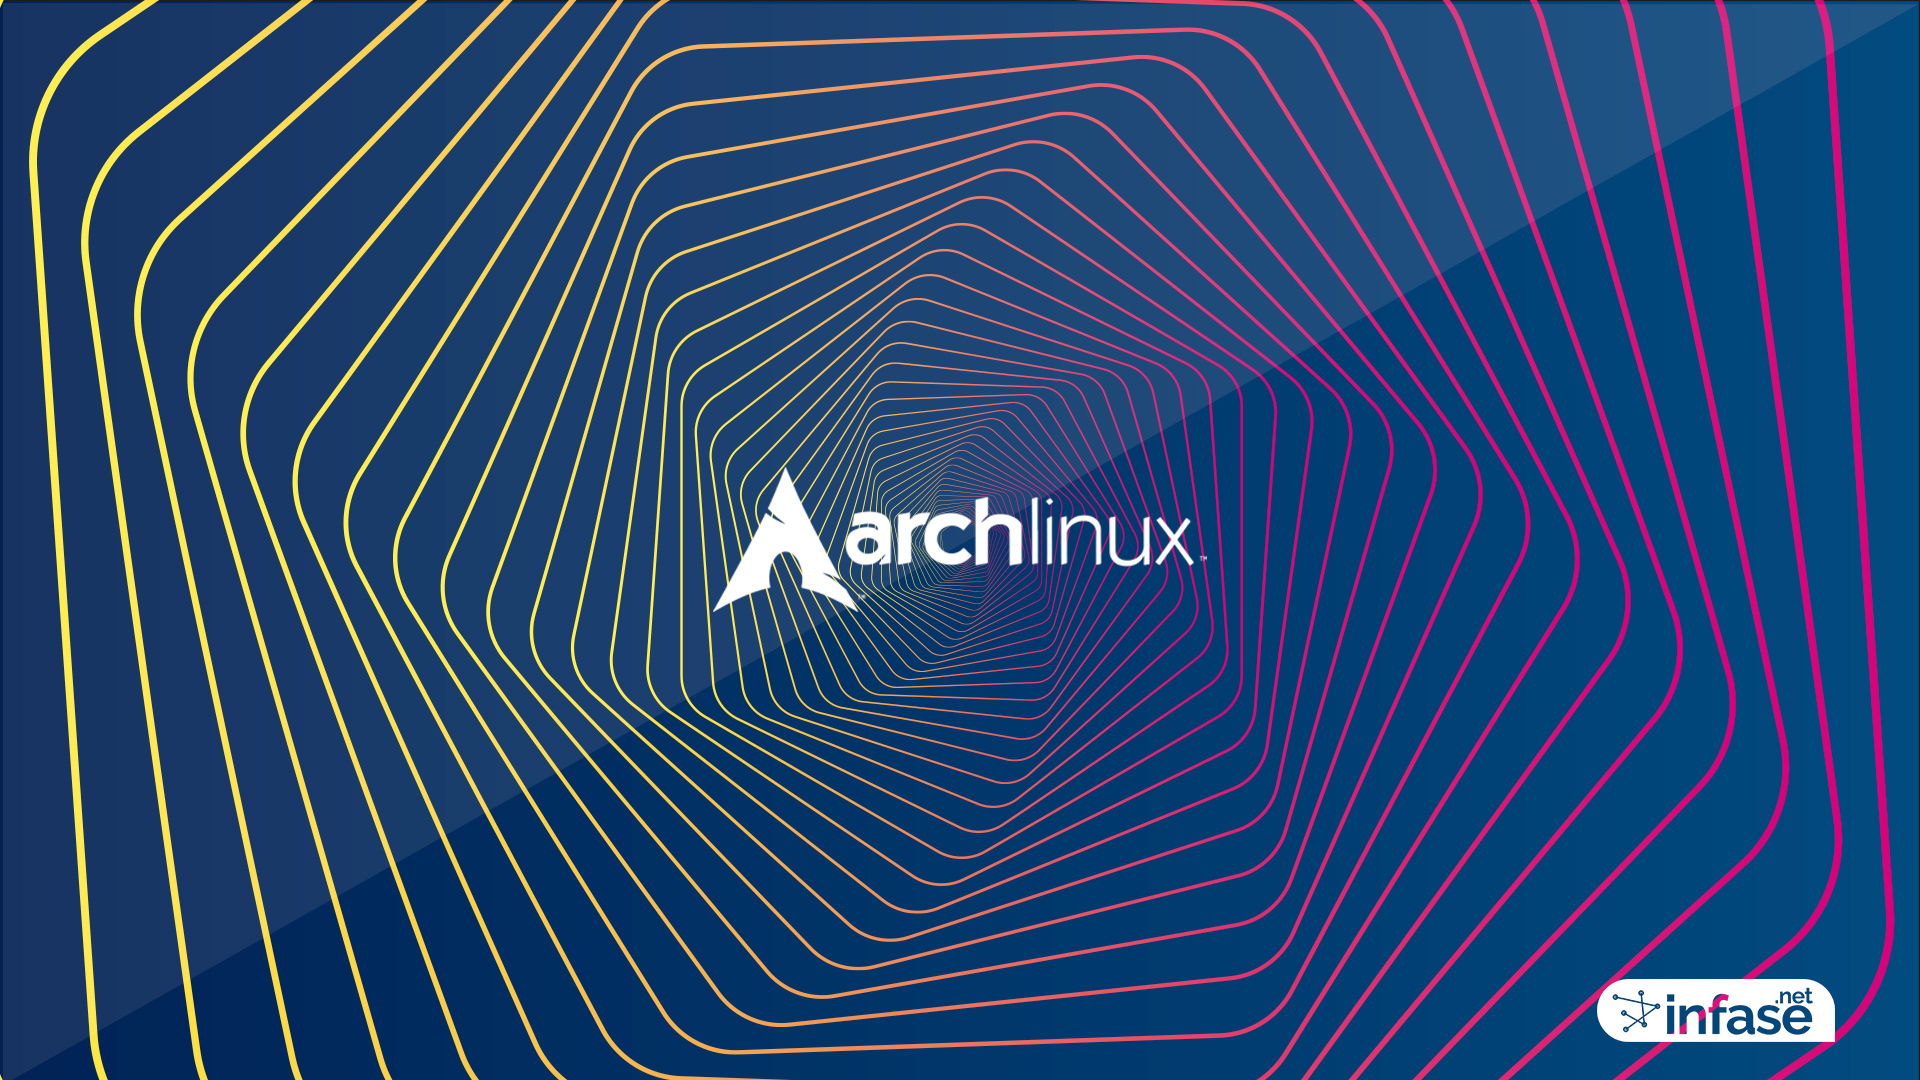 Fondo de pantalla Arch Linux